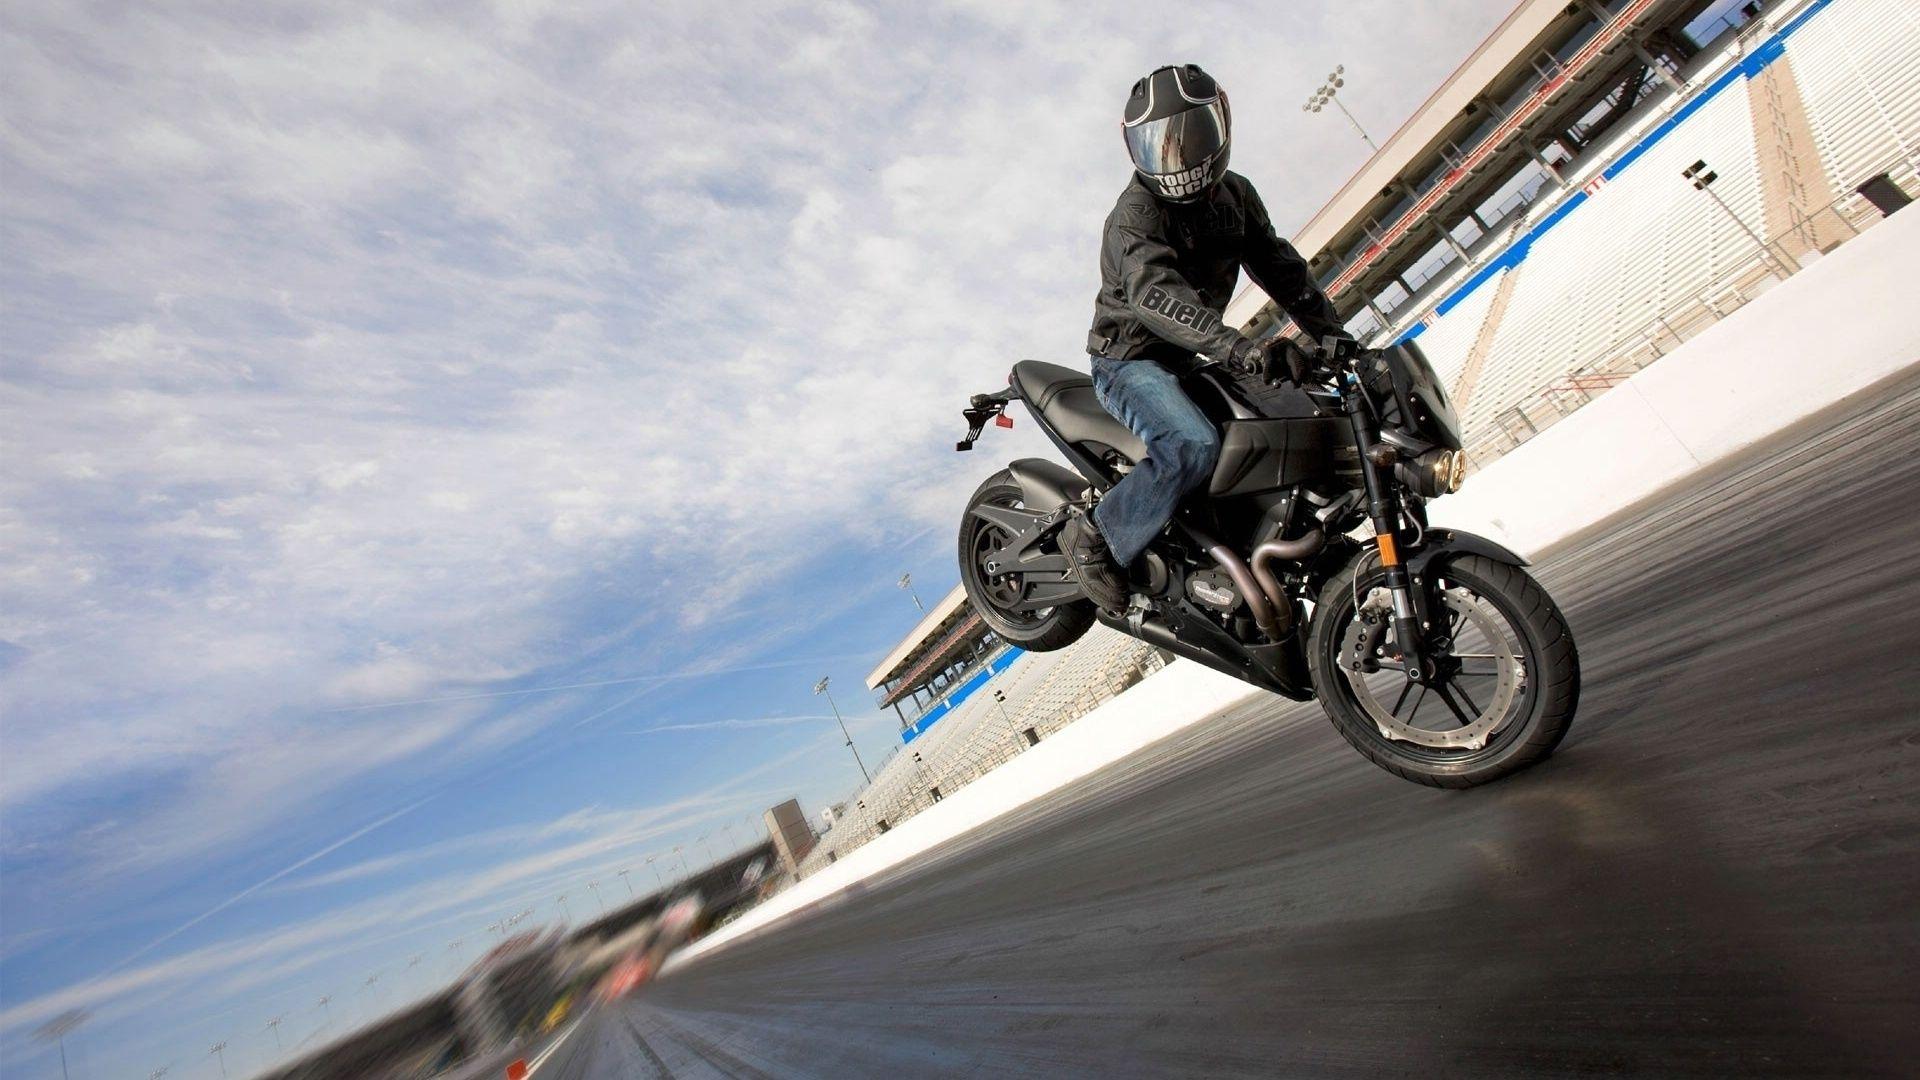 Bikes & Motorcycles Amazing Motocross Bike Stunt wallpaper Desktop